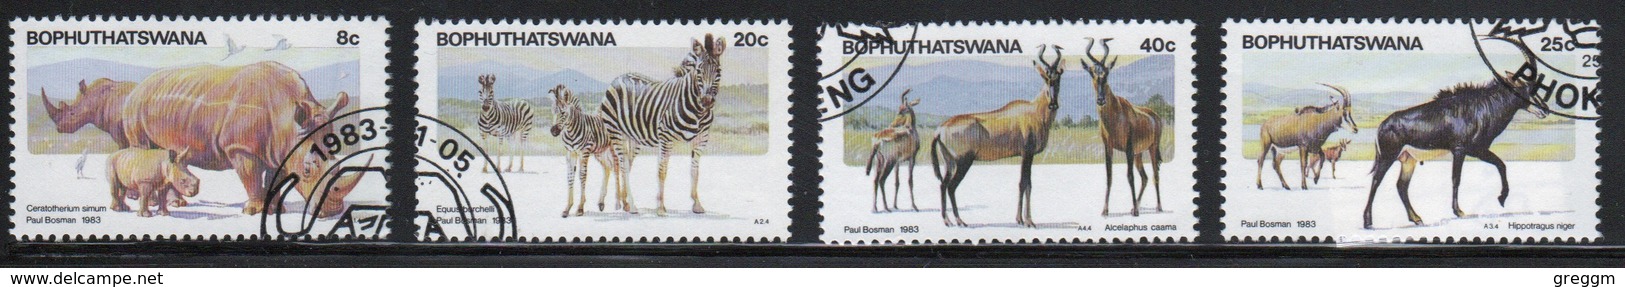 Bophuthatswana Set Of Stamps Celebrating Planesberg Nature Reserve  From 1983. - Bophuthatswana